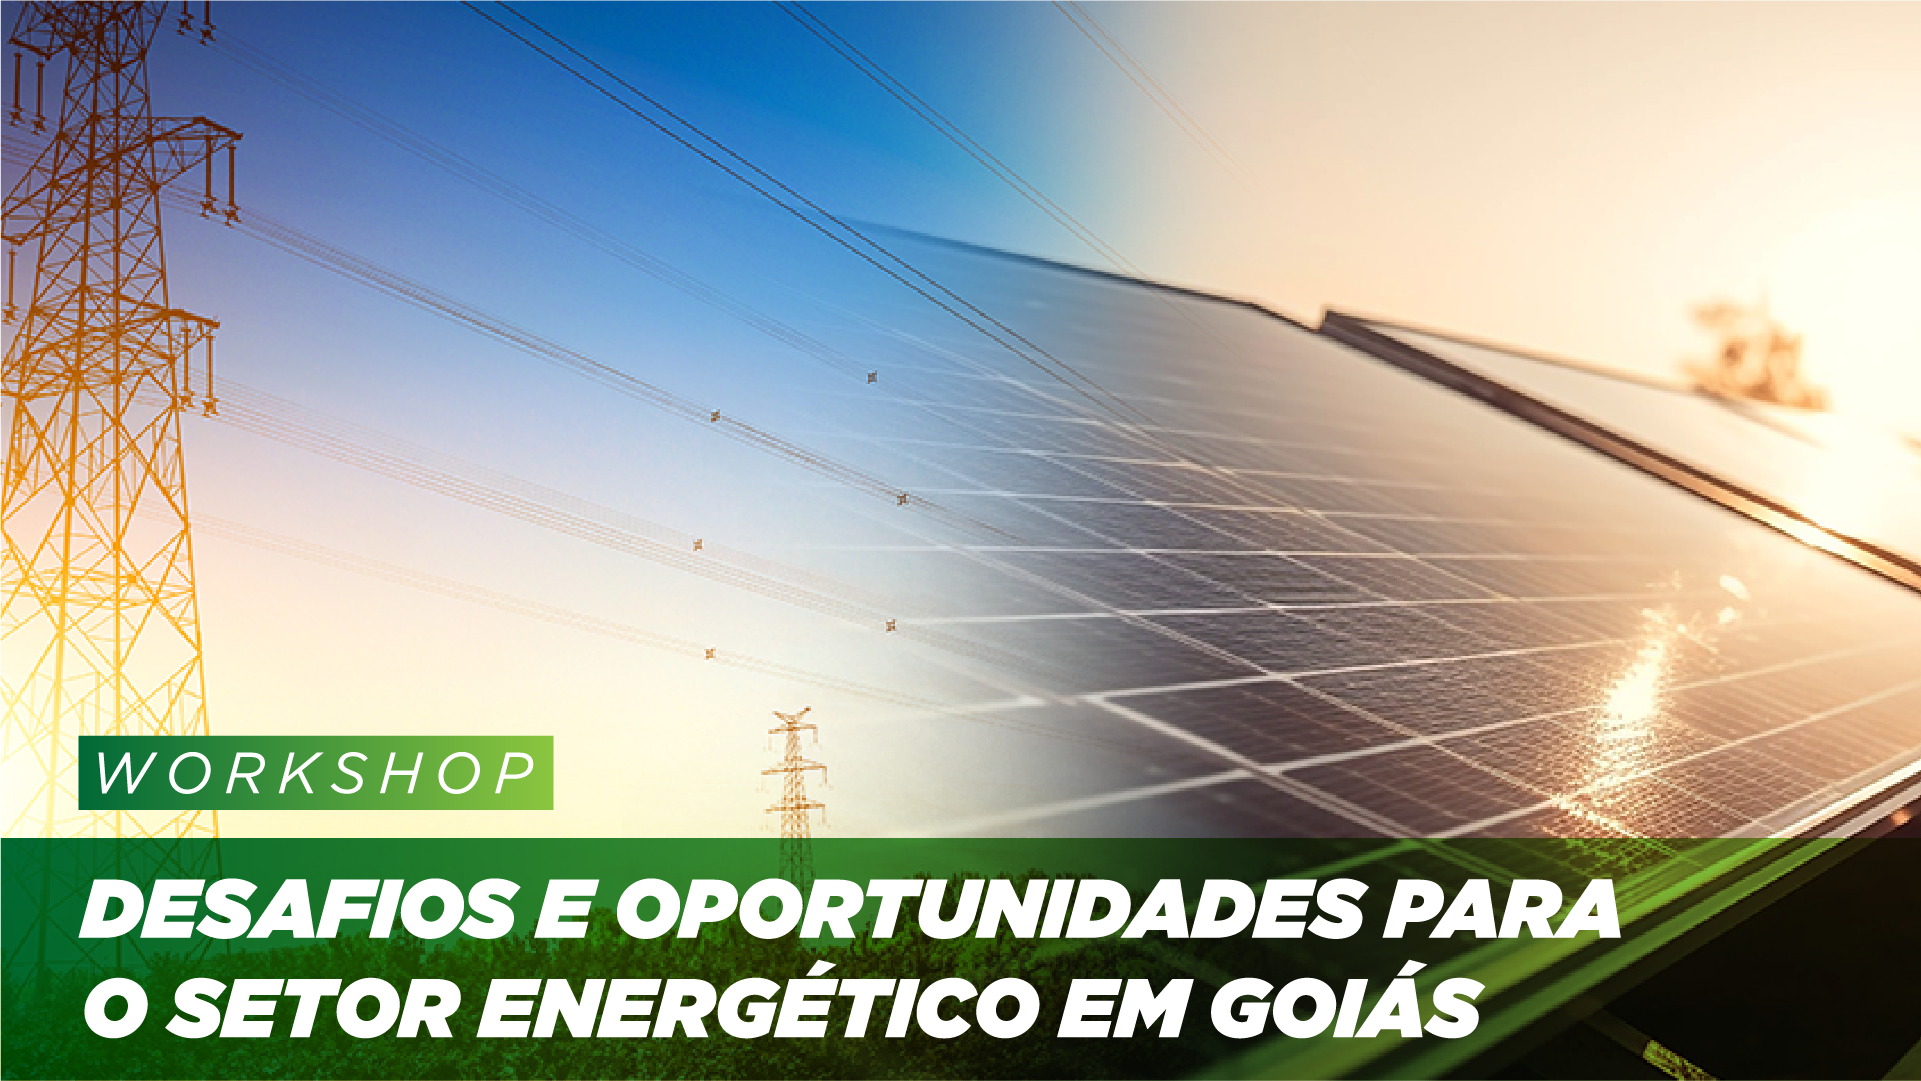 1° Workshop sobre energia da SGG discute desafios e oportunidades para o setor energético em Goiás